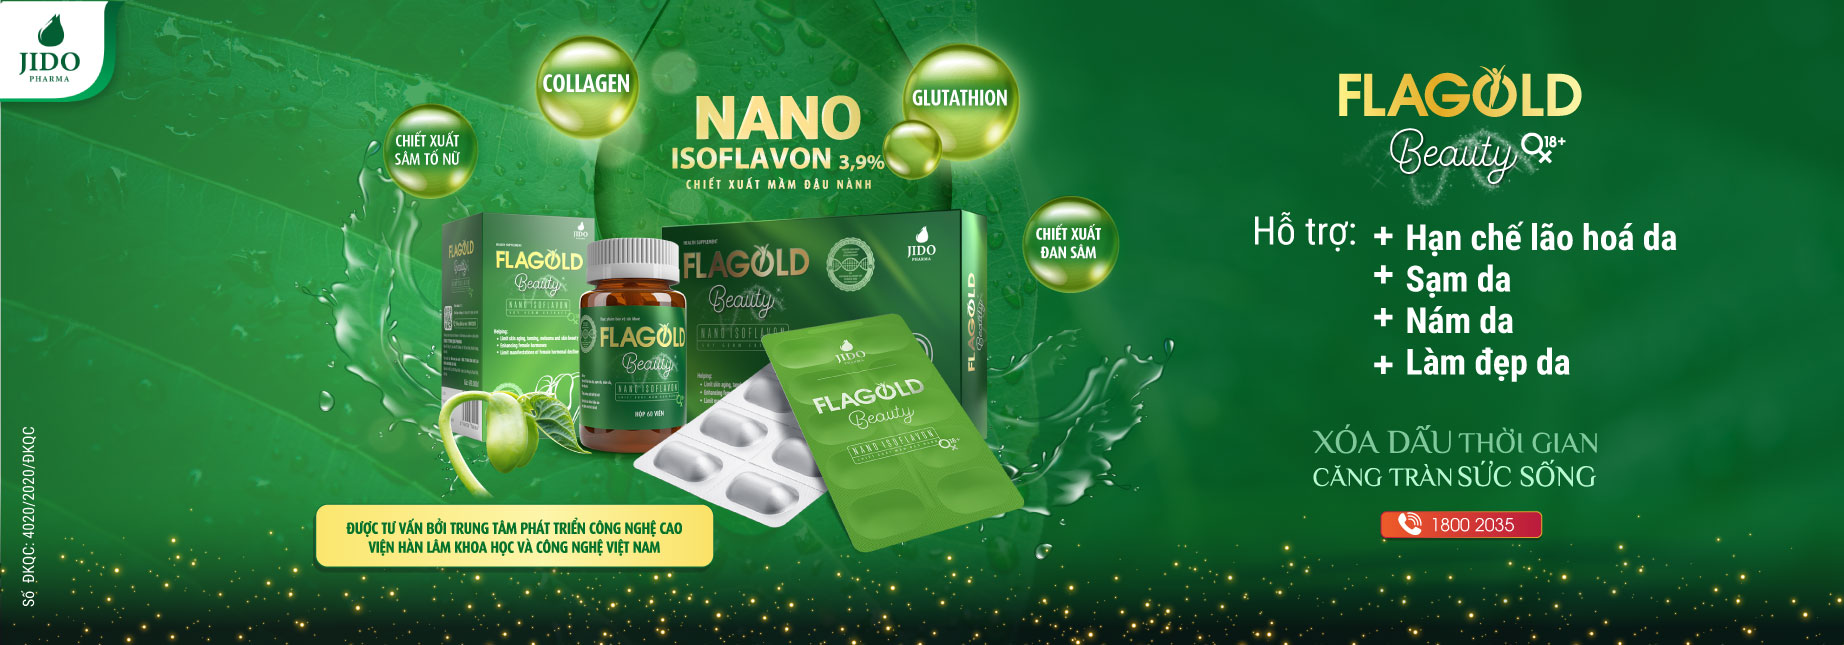 Nano mầm đậu nành FlaGold | Xóa dấu thời gian căng tràn sức sống